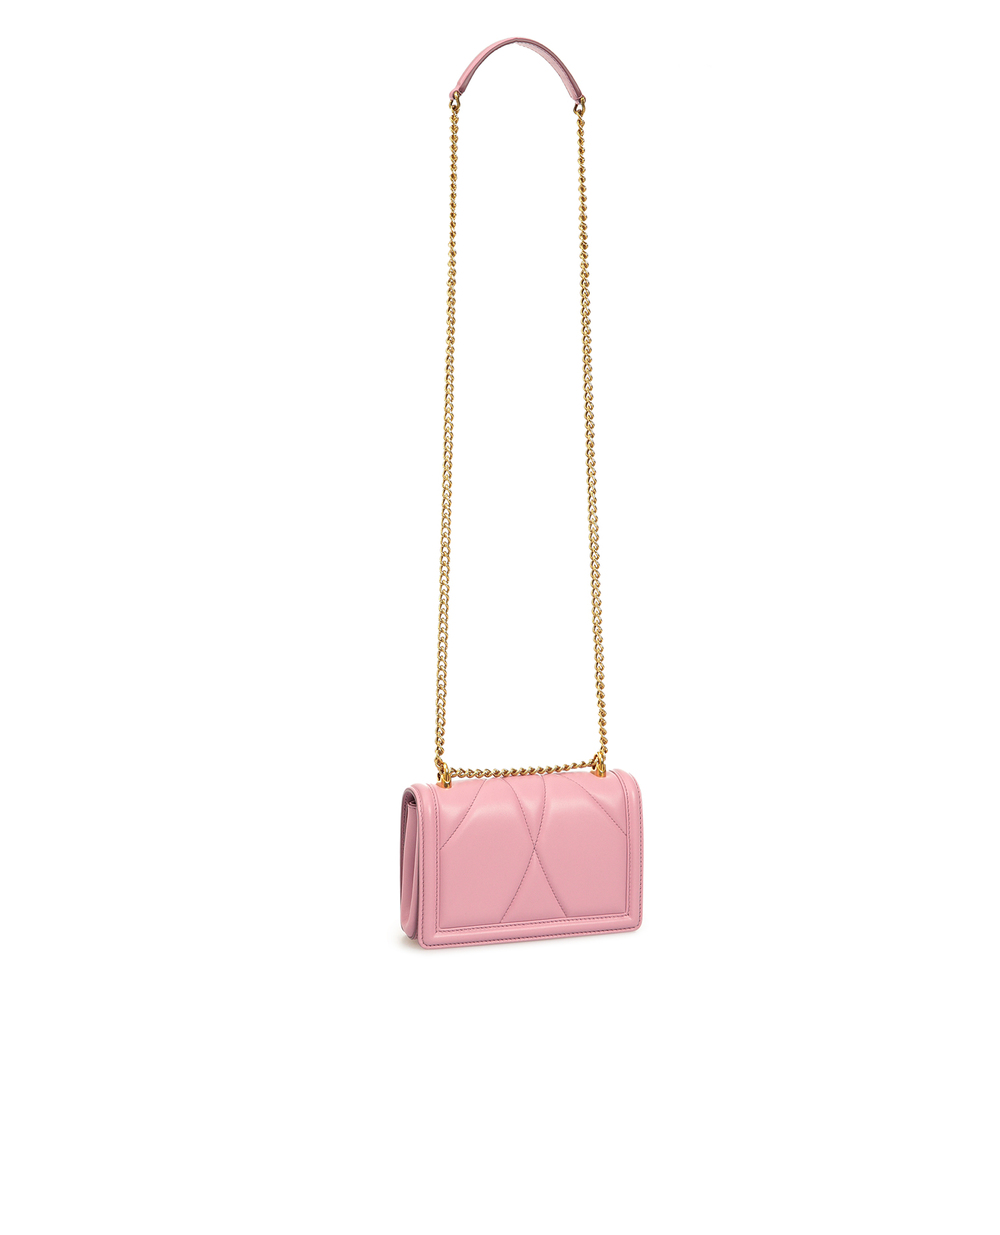 Кожаная сумка Devotion mini Dolce&Gabbana BB6880-AV967, розовый цвет • Купить в интернет-магазине Kameron